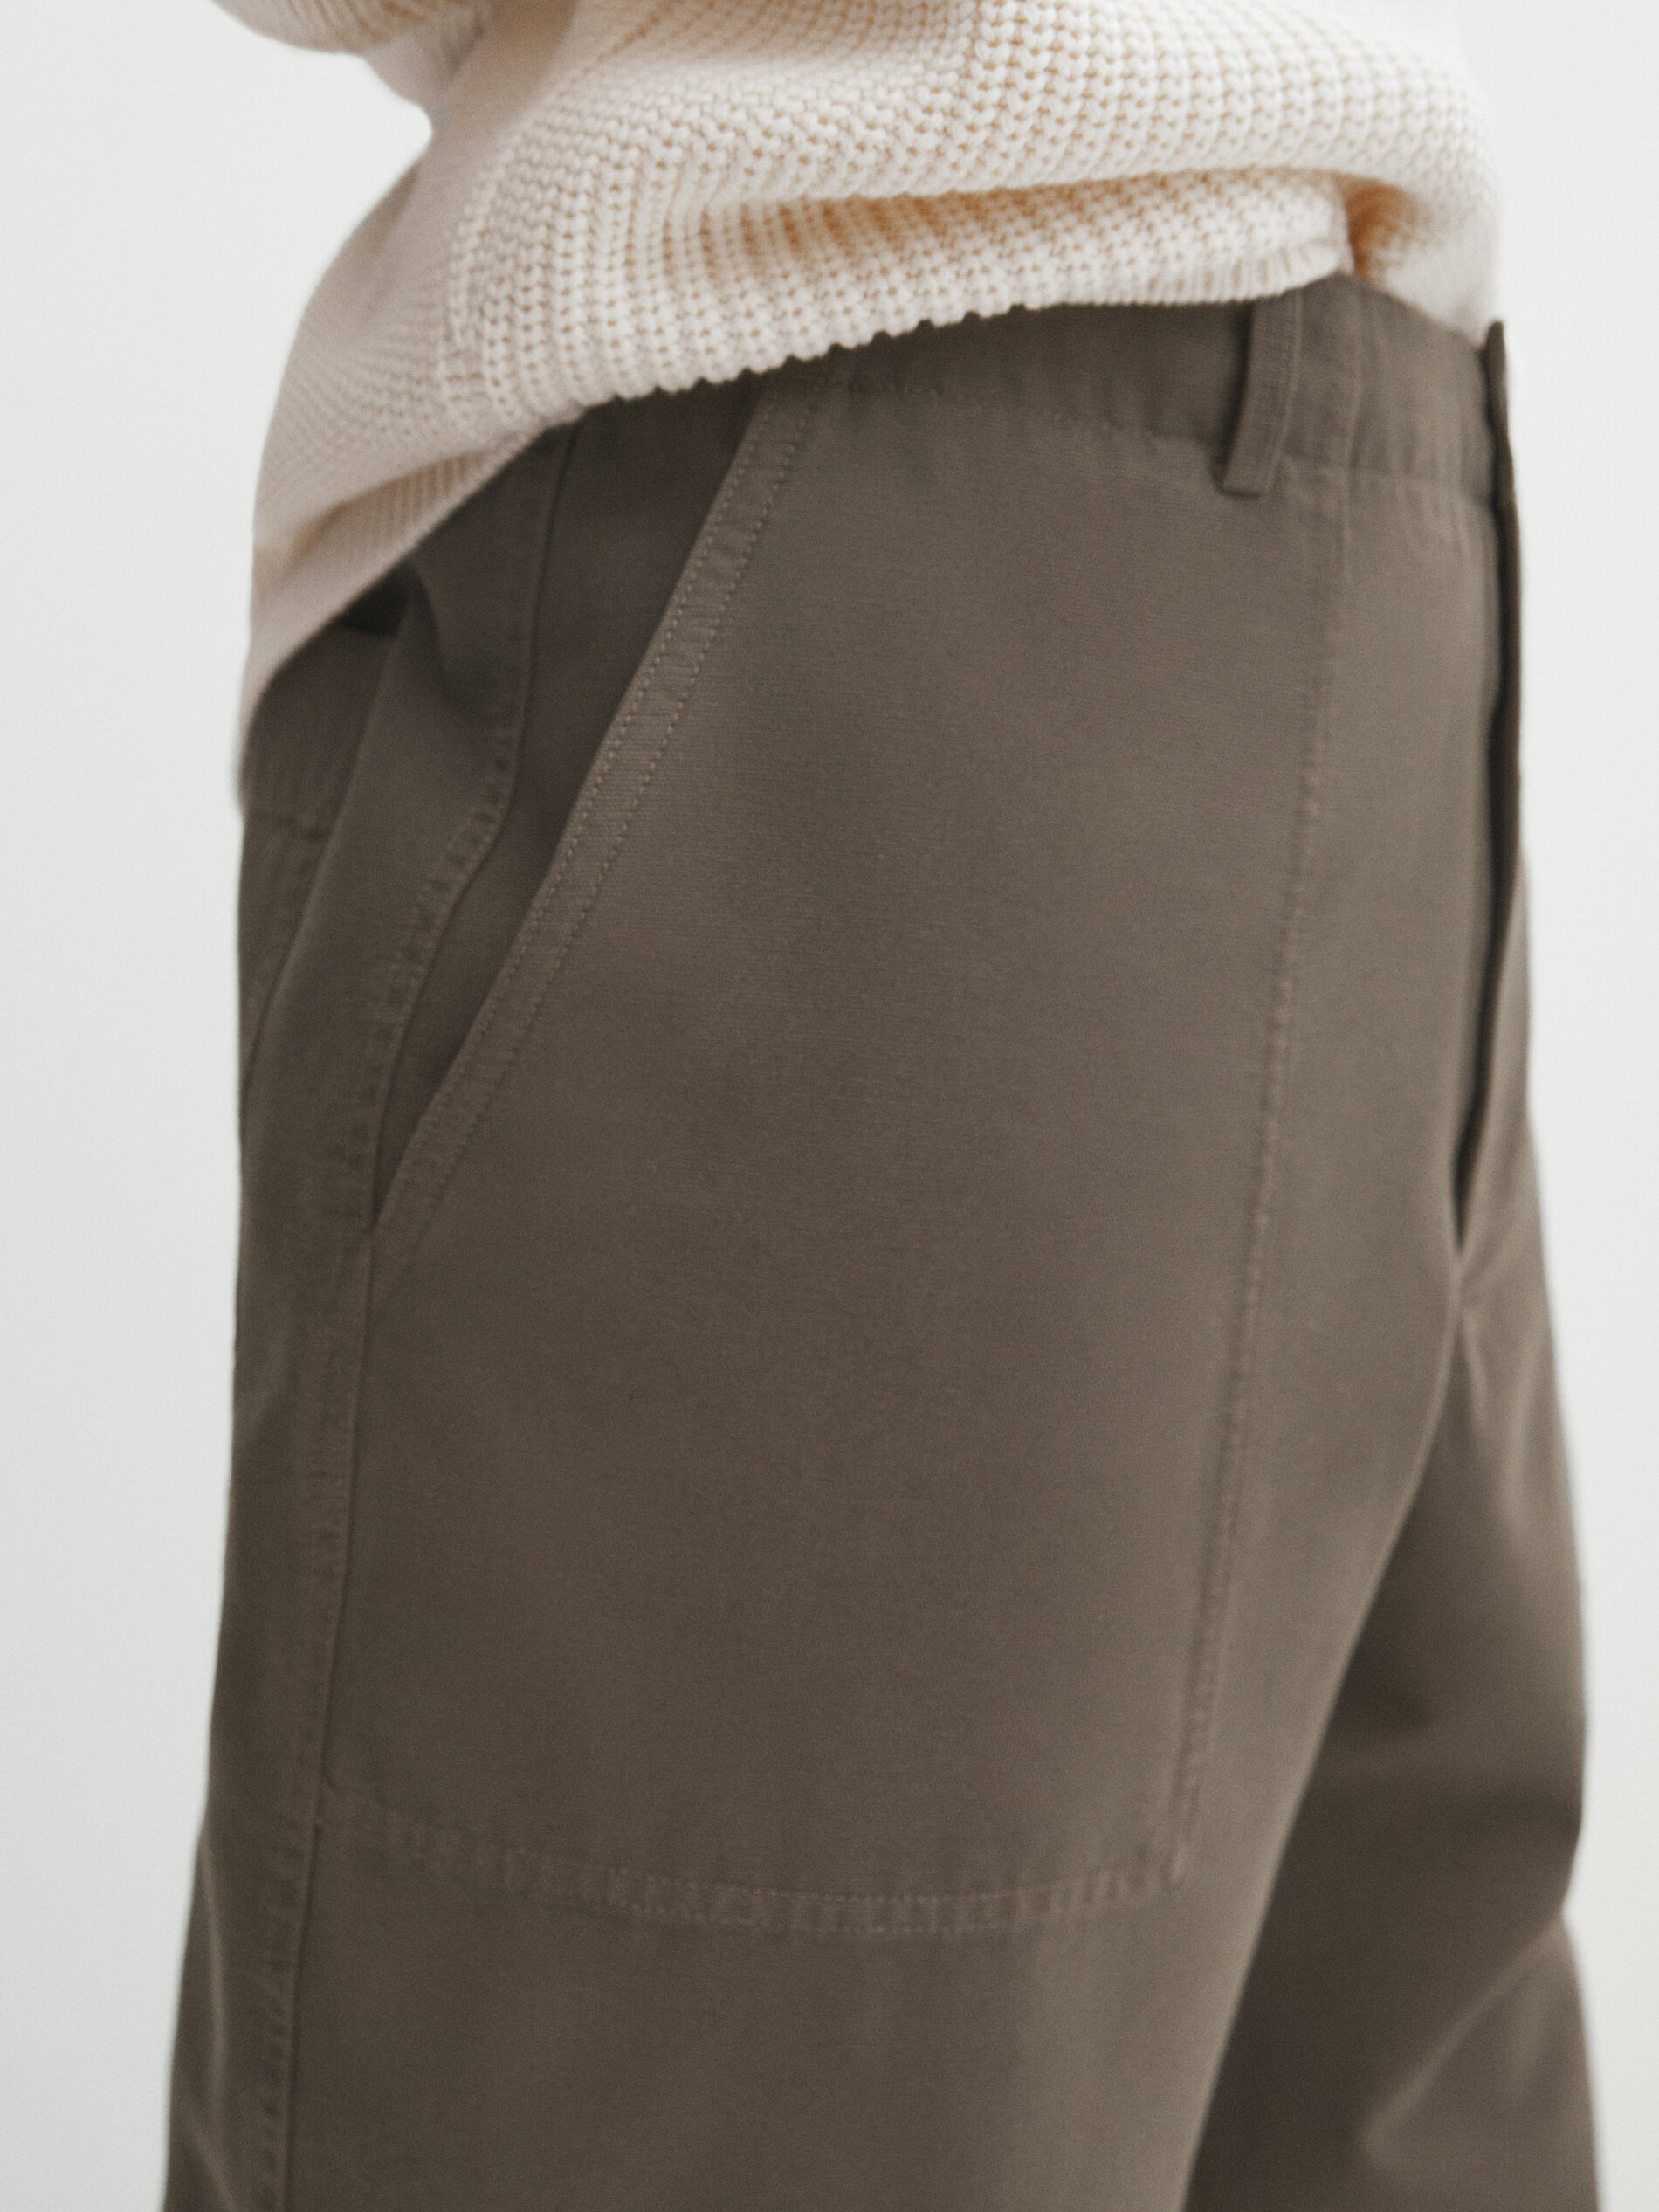 ASOS DESIGN relaxed chino pants in khaki | ASOS